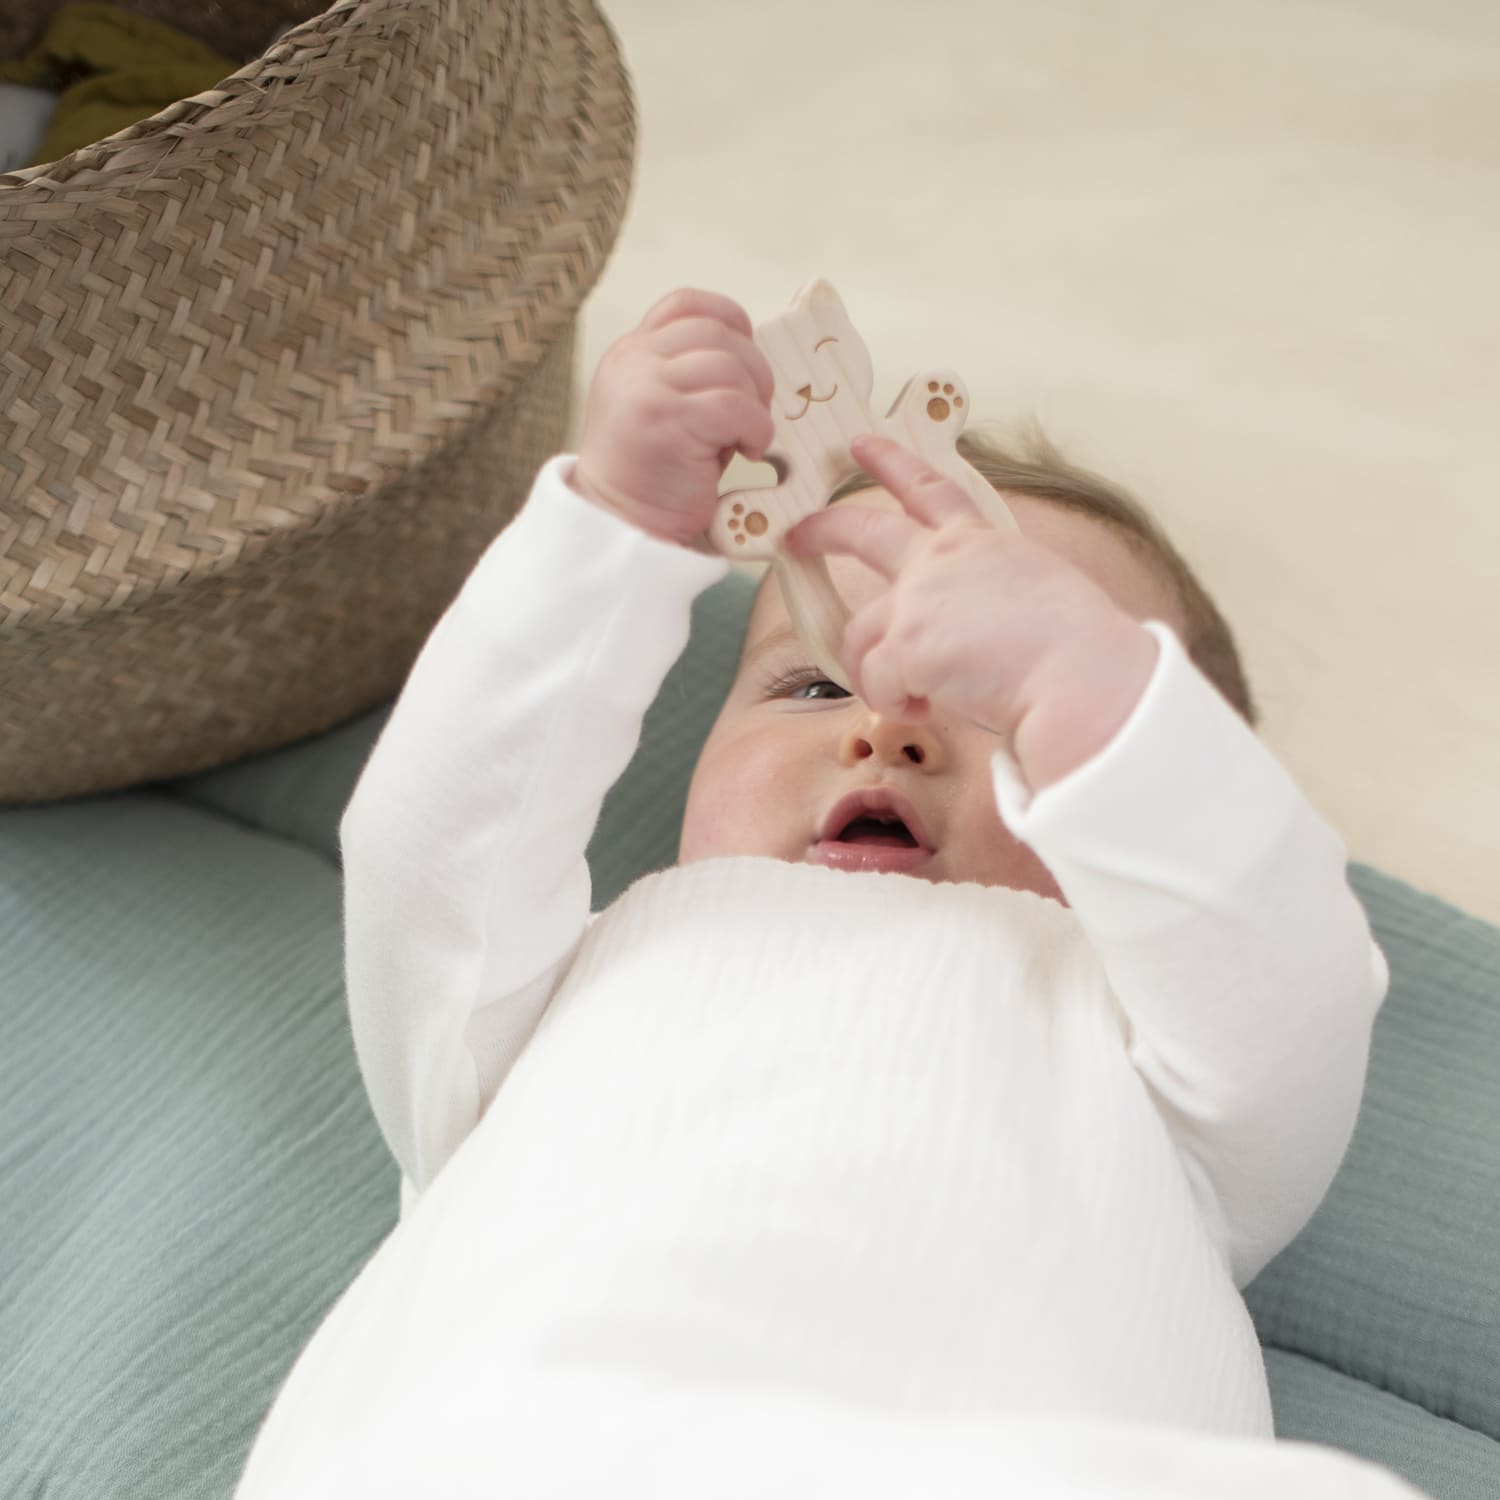 Tapis d'éveil : quels atouts pour bébé ?